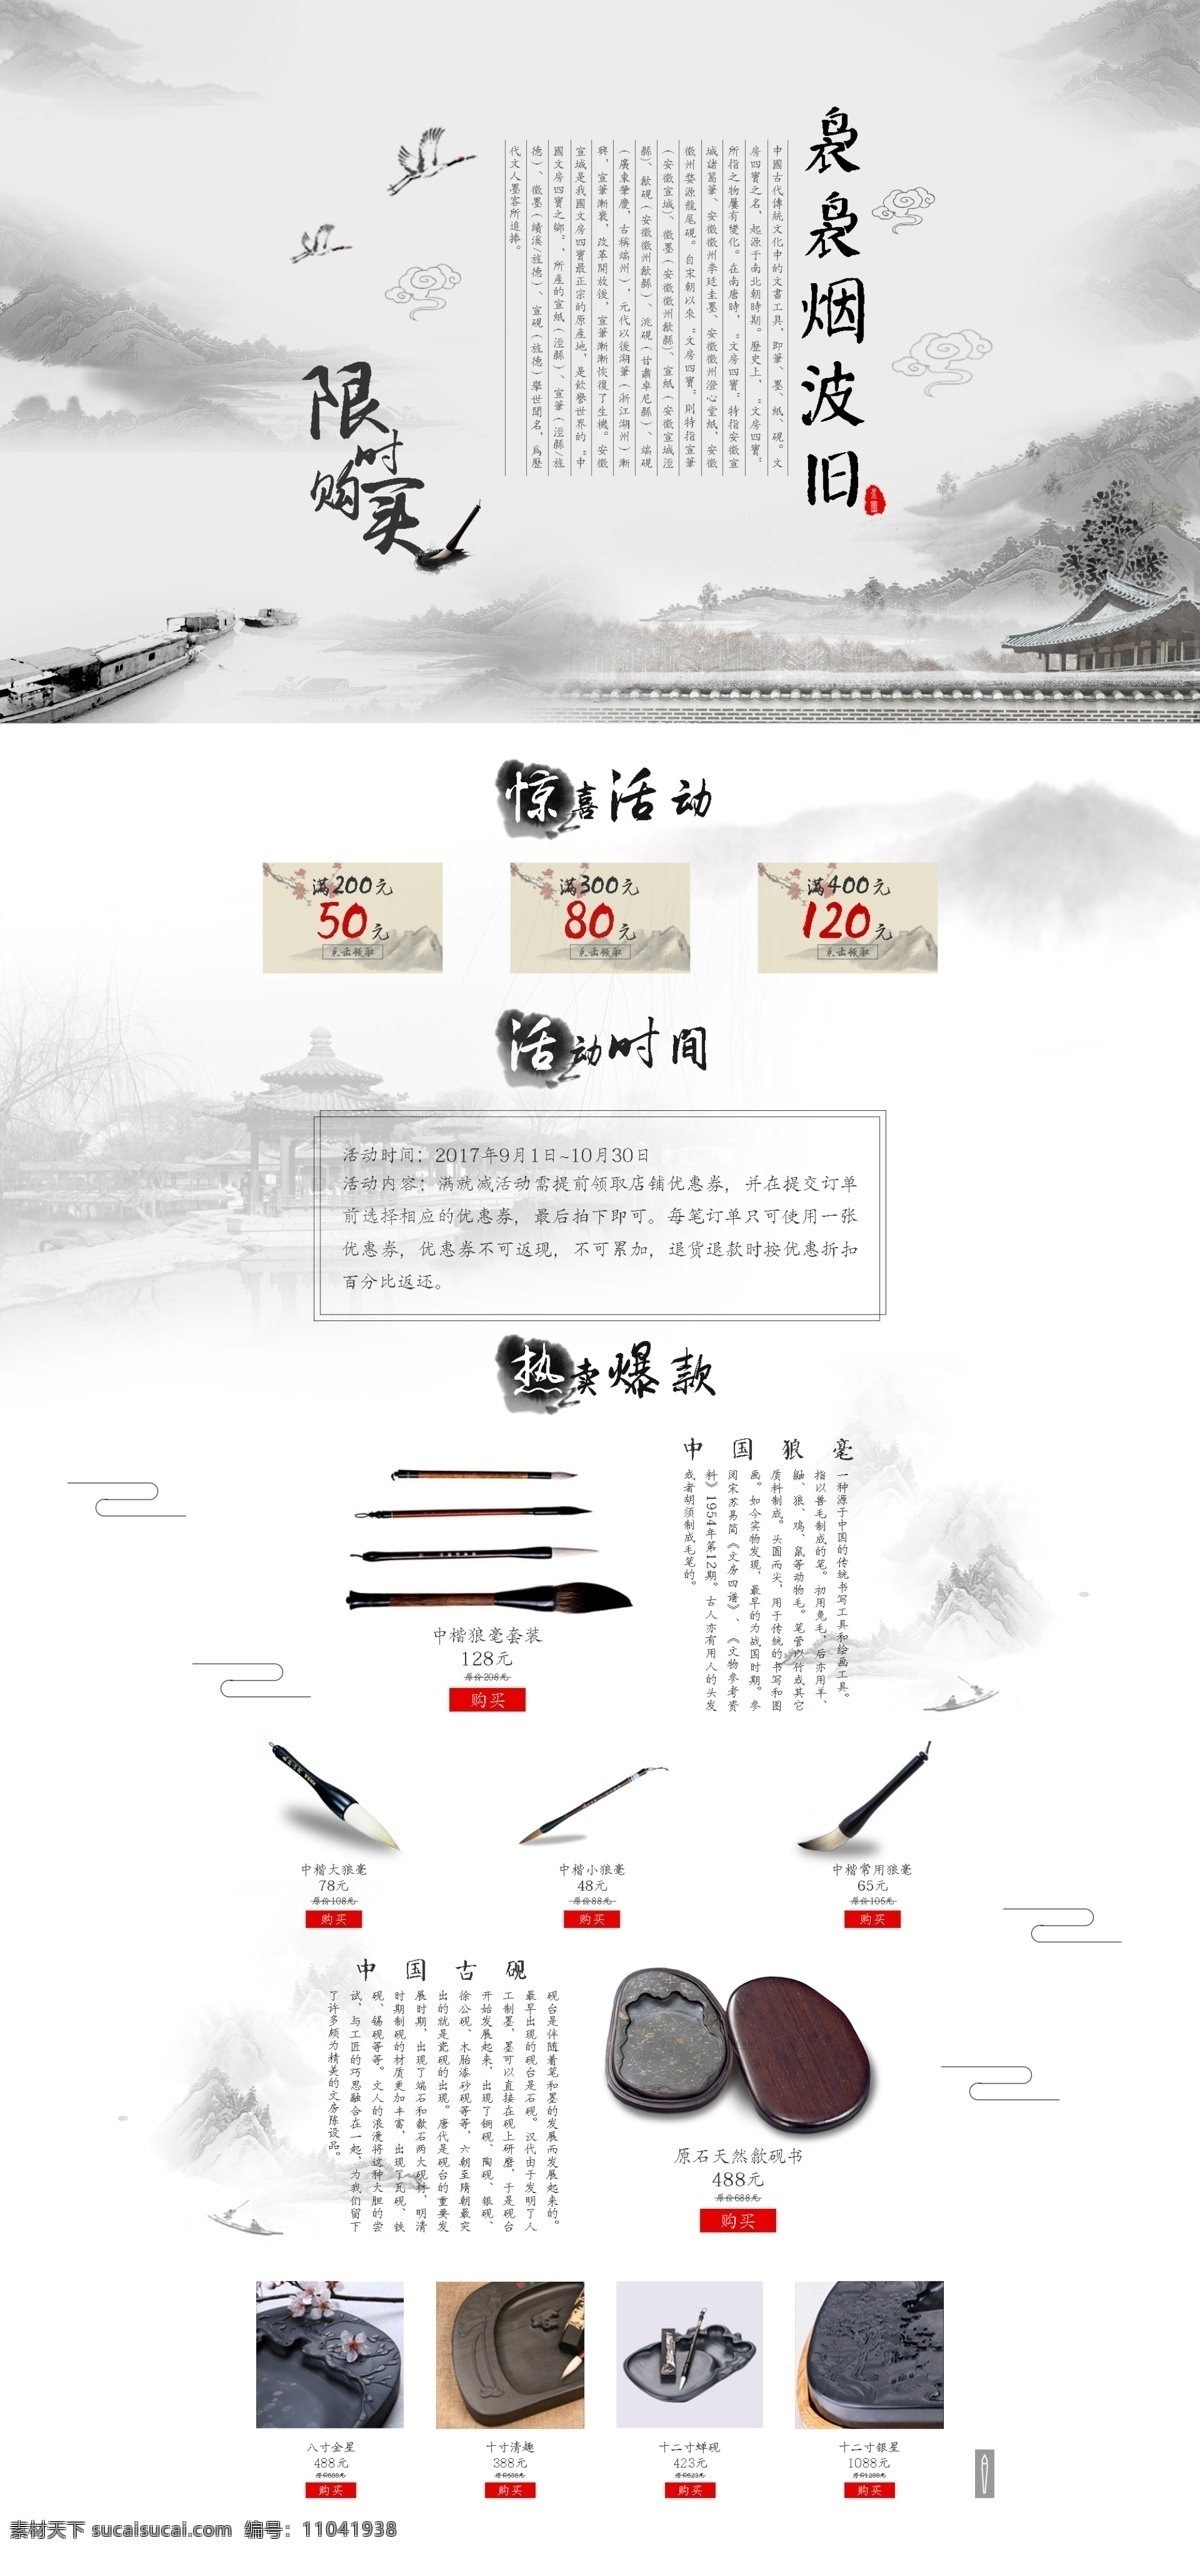 古典 笔砚 专题 网页素材 专题设计 中国风 笔墨纸砚 中式 网页 砚台 毛笔 水墨